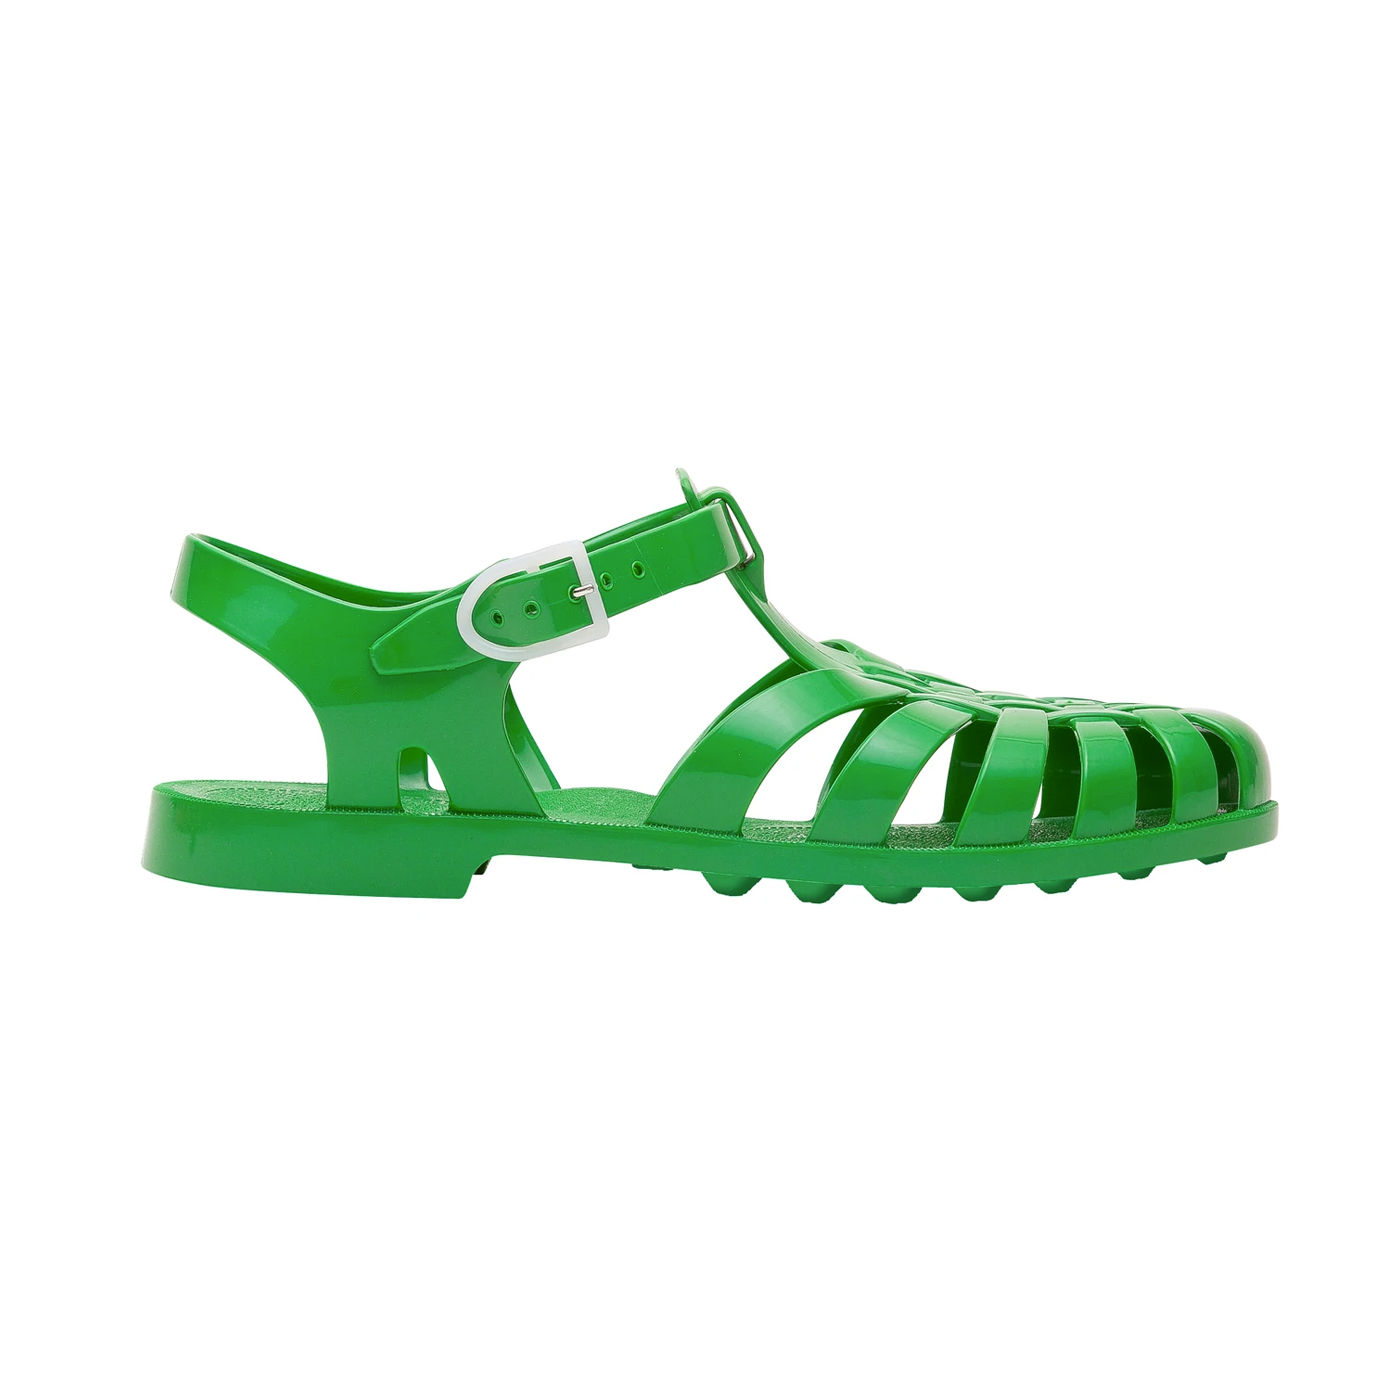  Meduse Sun Gazon Sandals - Çocuk Sandalet  | Yeşil